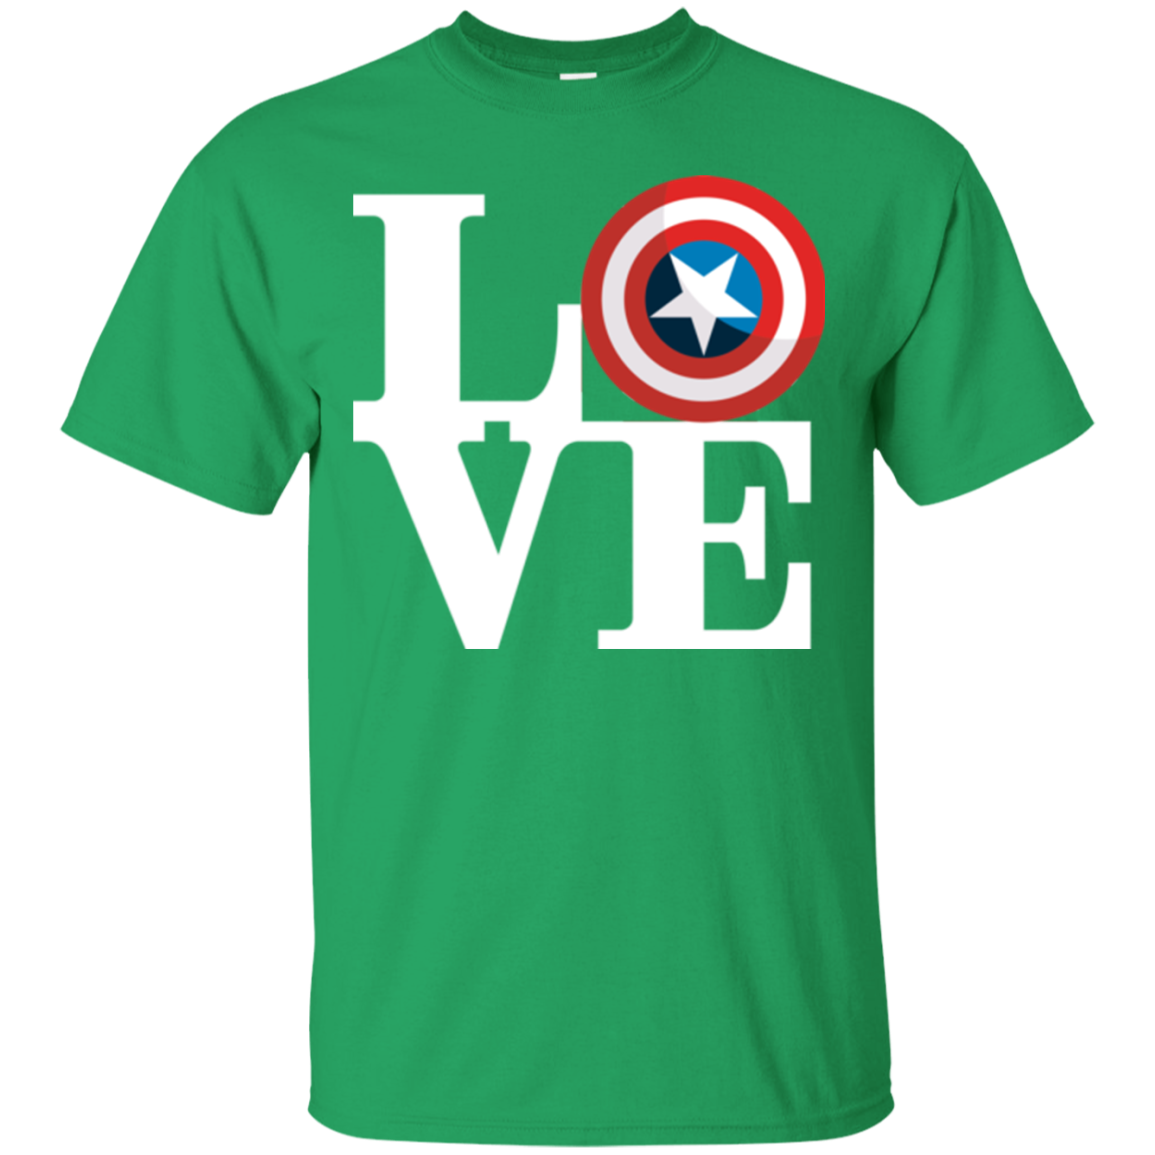 Captain's Love T-Shirt